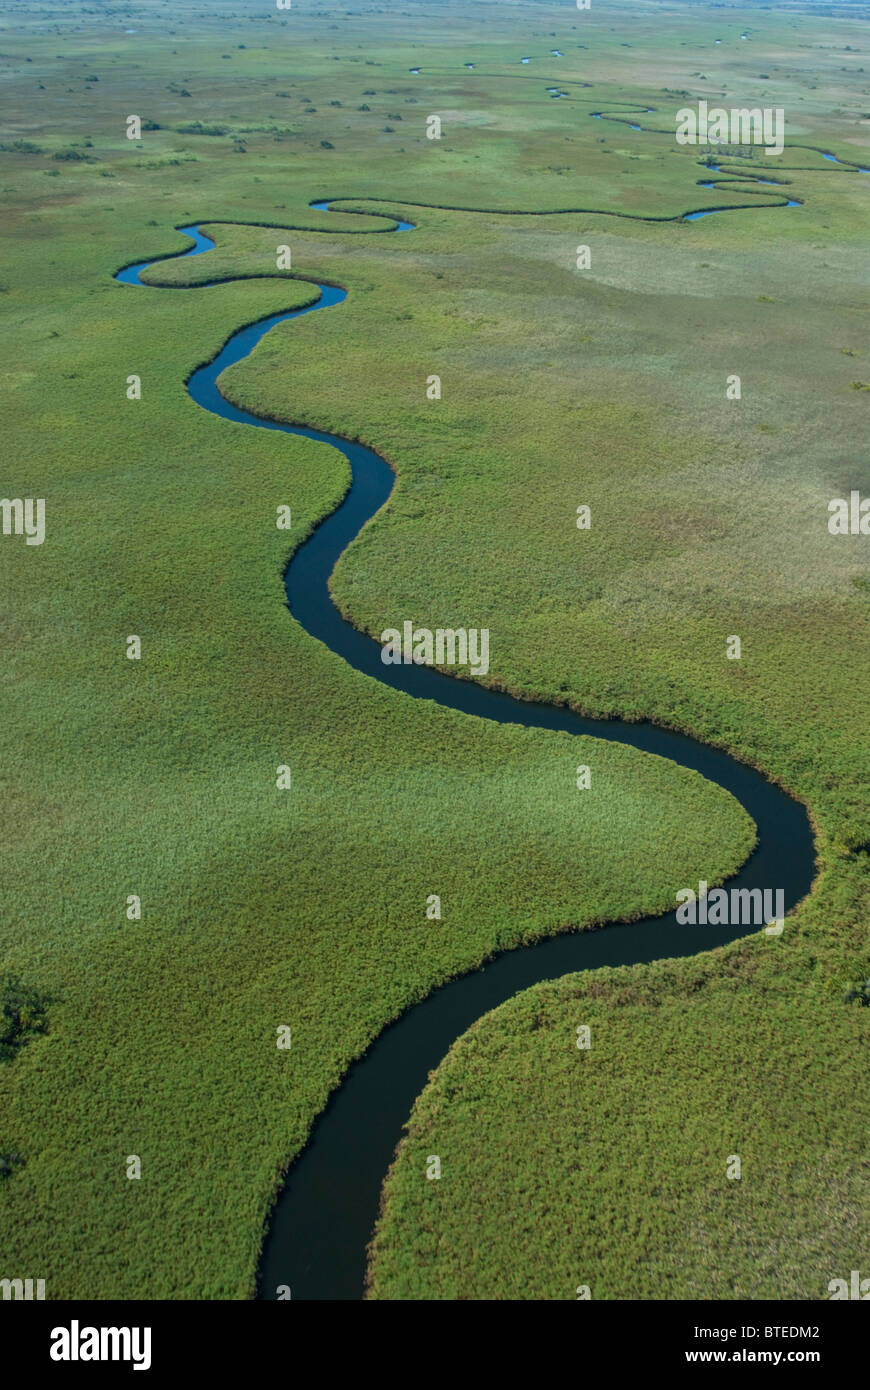 Vue panoramique aérienne de la rivière sinueuse bordée de roseaux de papyrus Banque D'Images